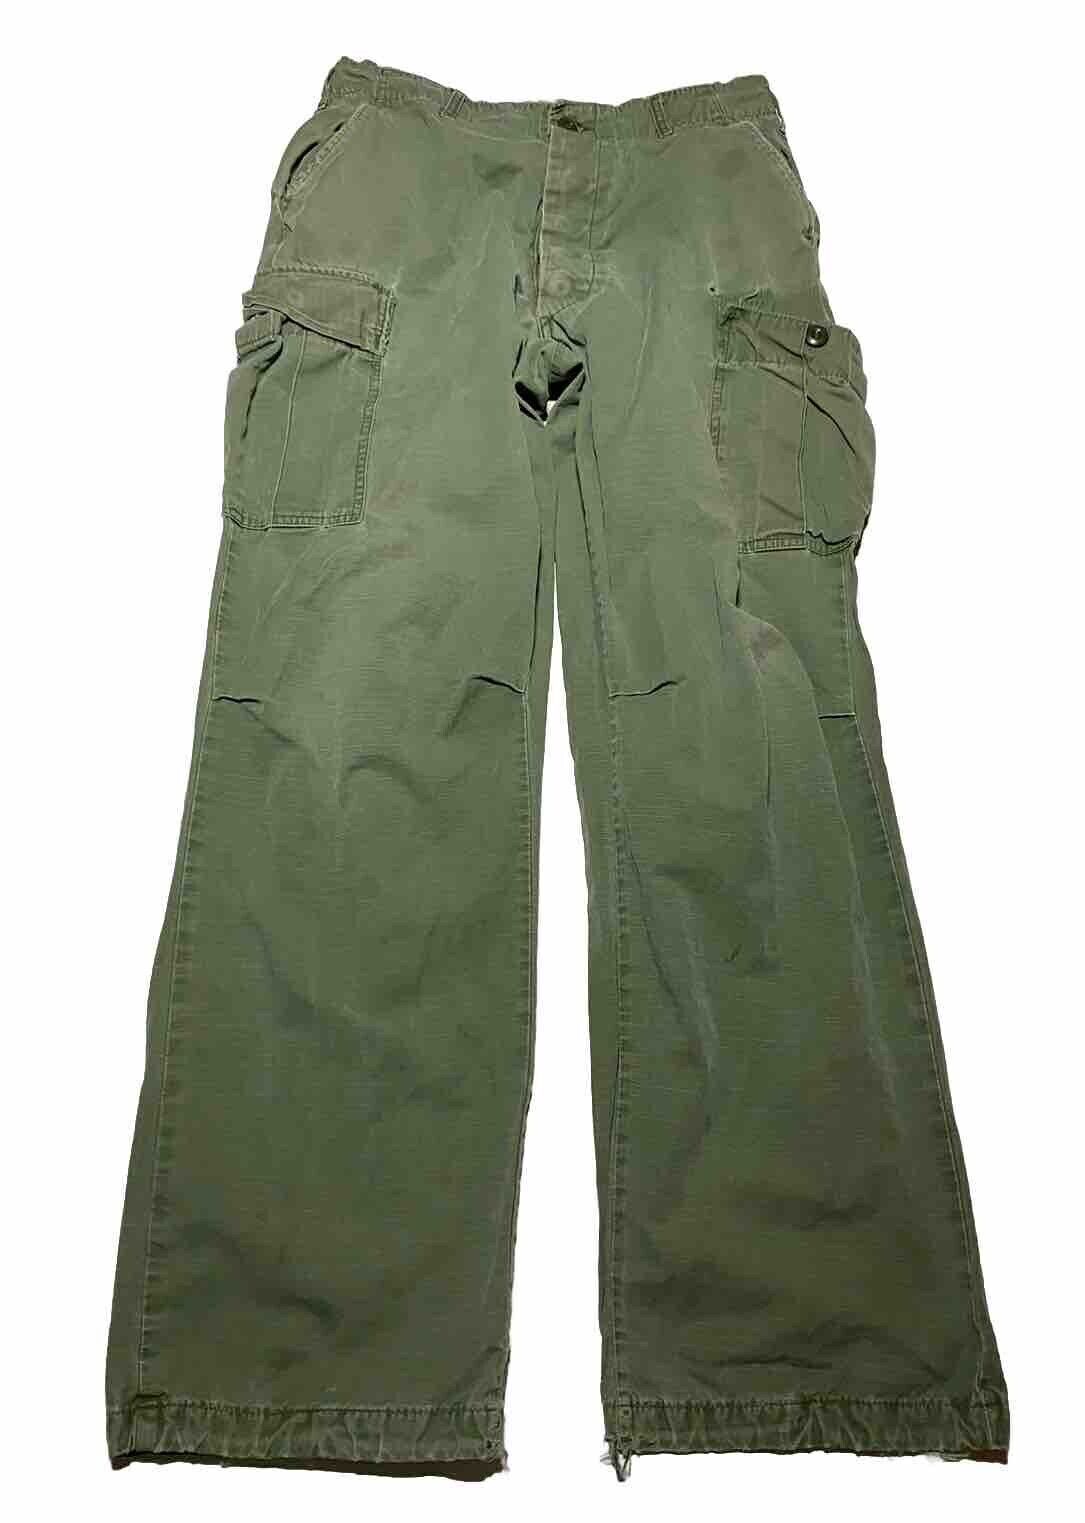 Vintage Vietnam Era US Army Trousers OG-107 Poplin Rip Stop Pants Medium AH3